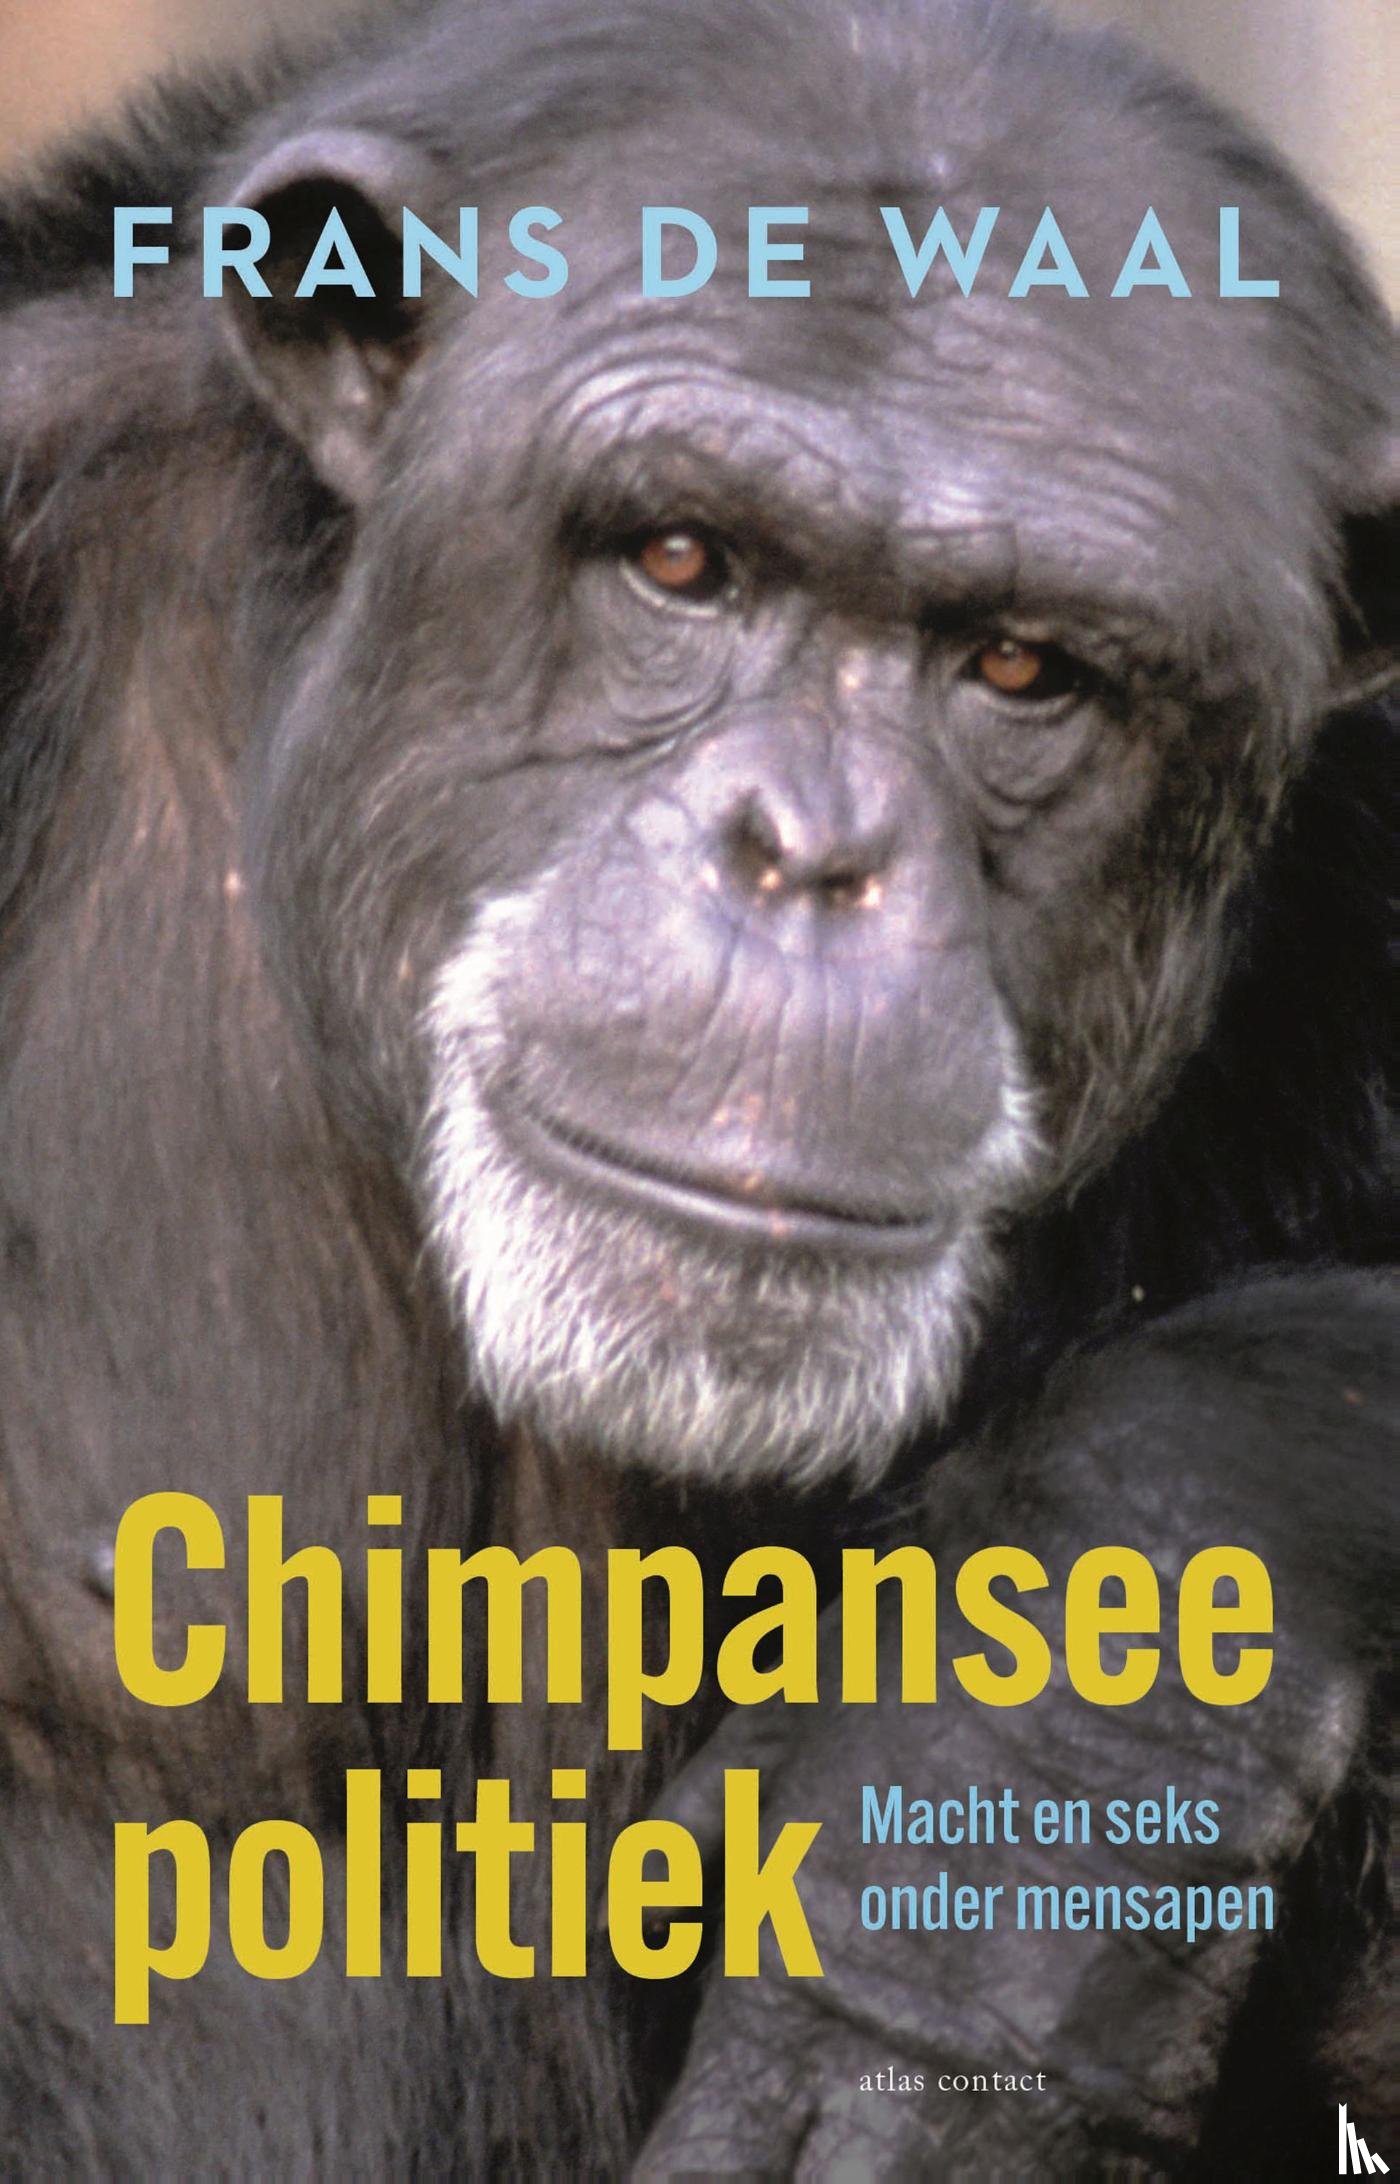 Waal, Frans de - Chimpanseepolitiek